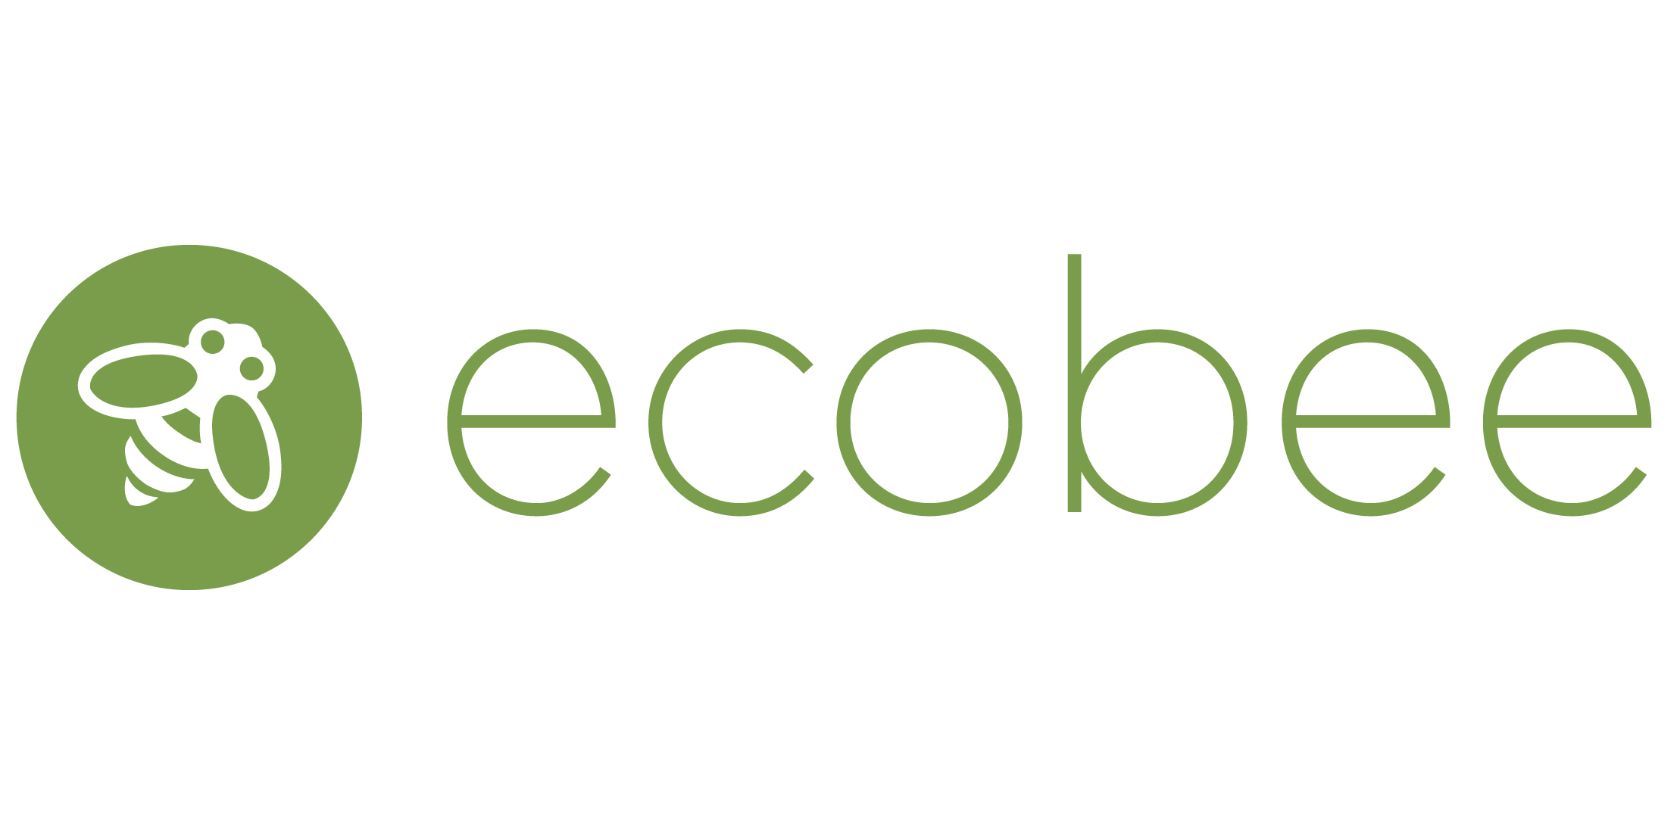 ecobee-logo